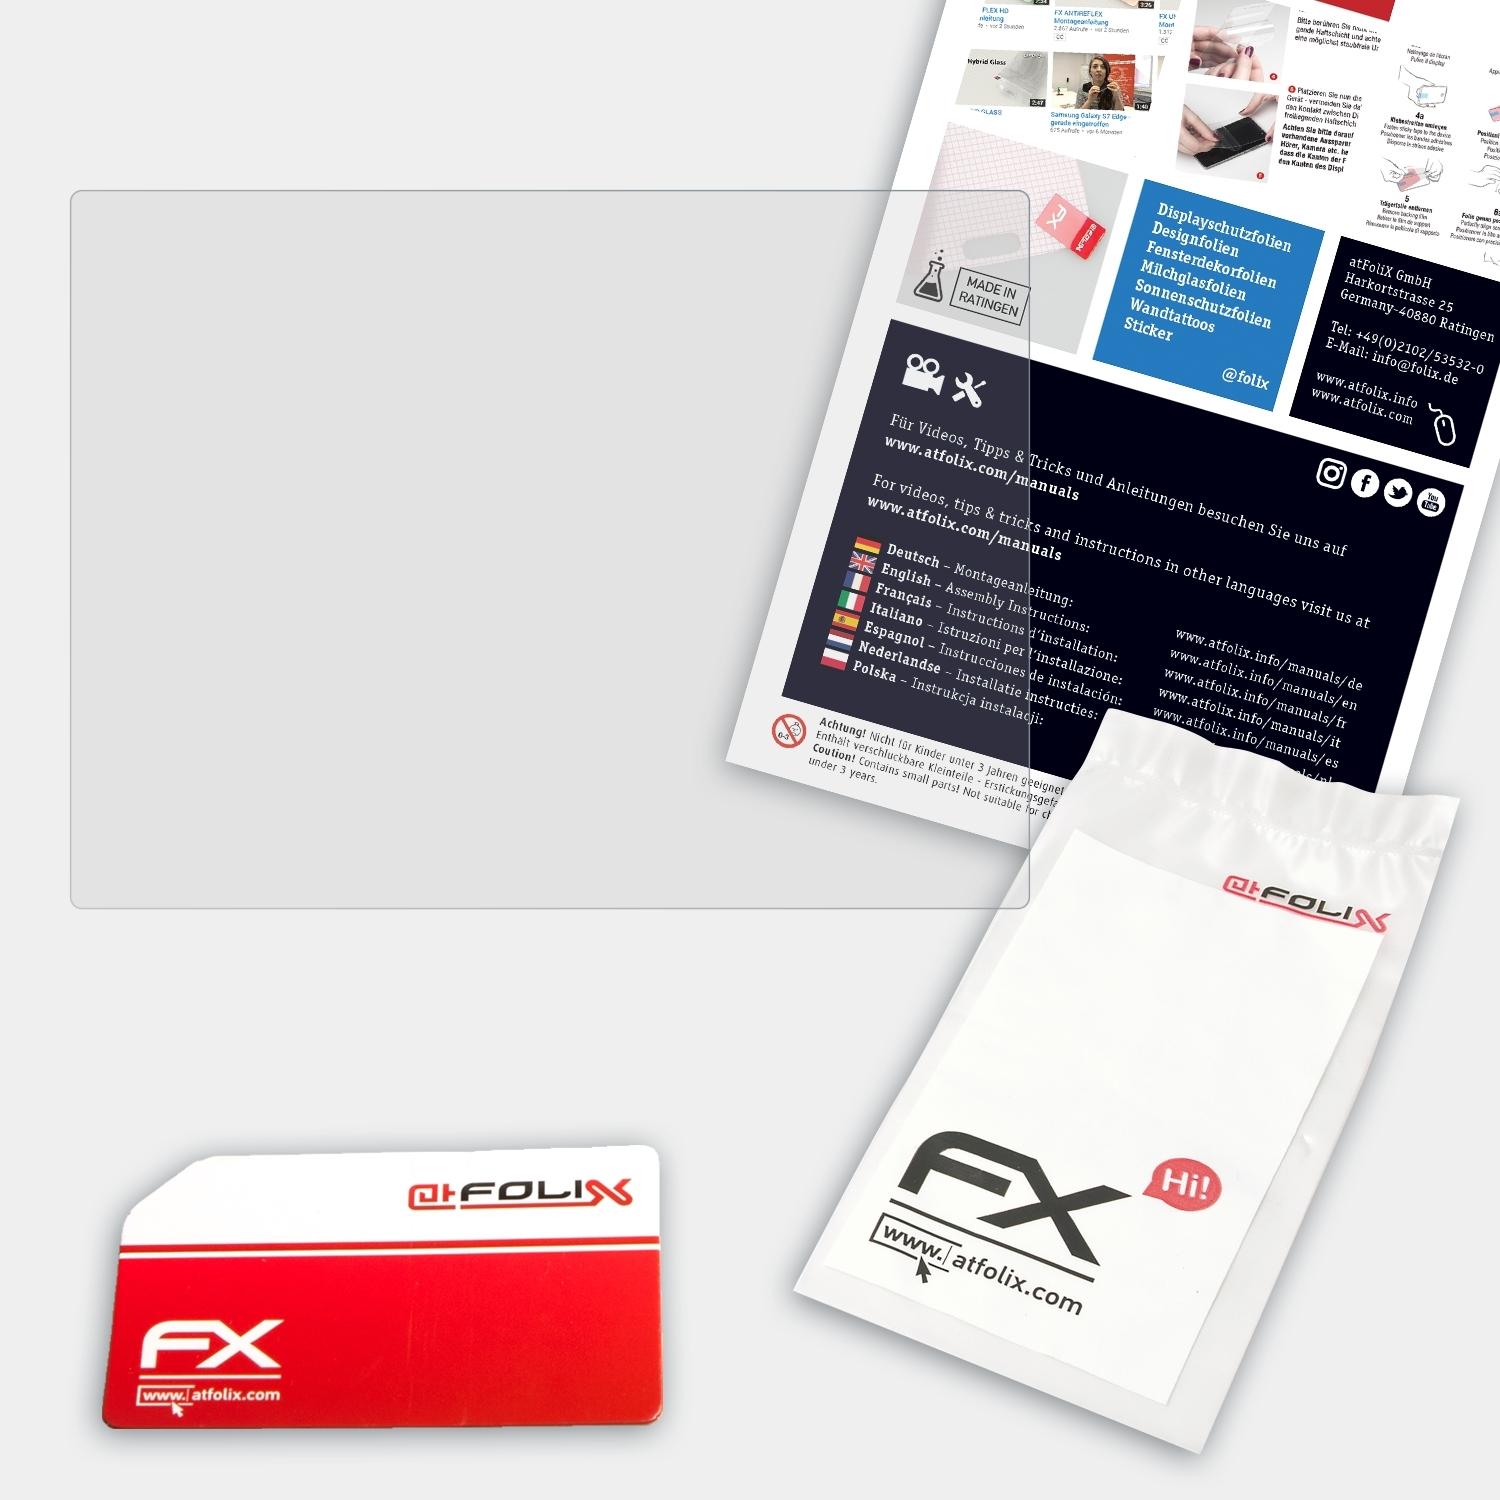 ATFOLIX FX-Antireflex Displayschutz(für Rollei PDF-S 240 SE)